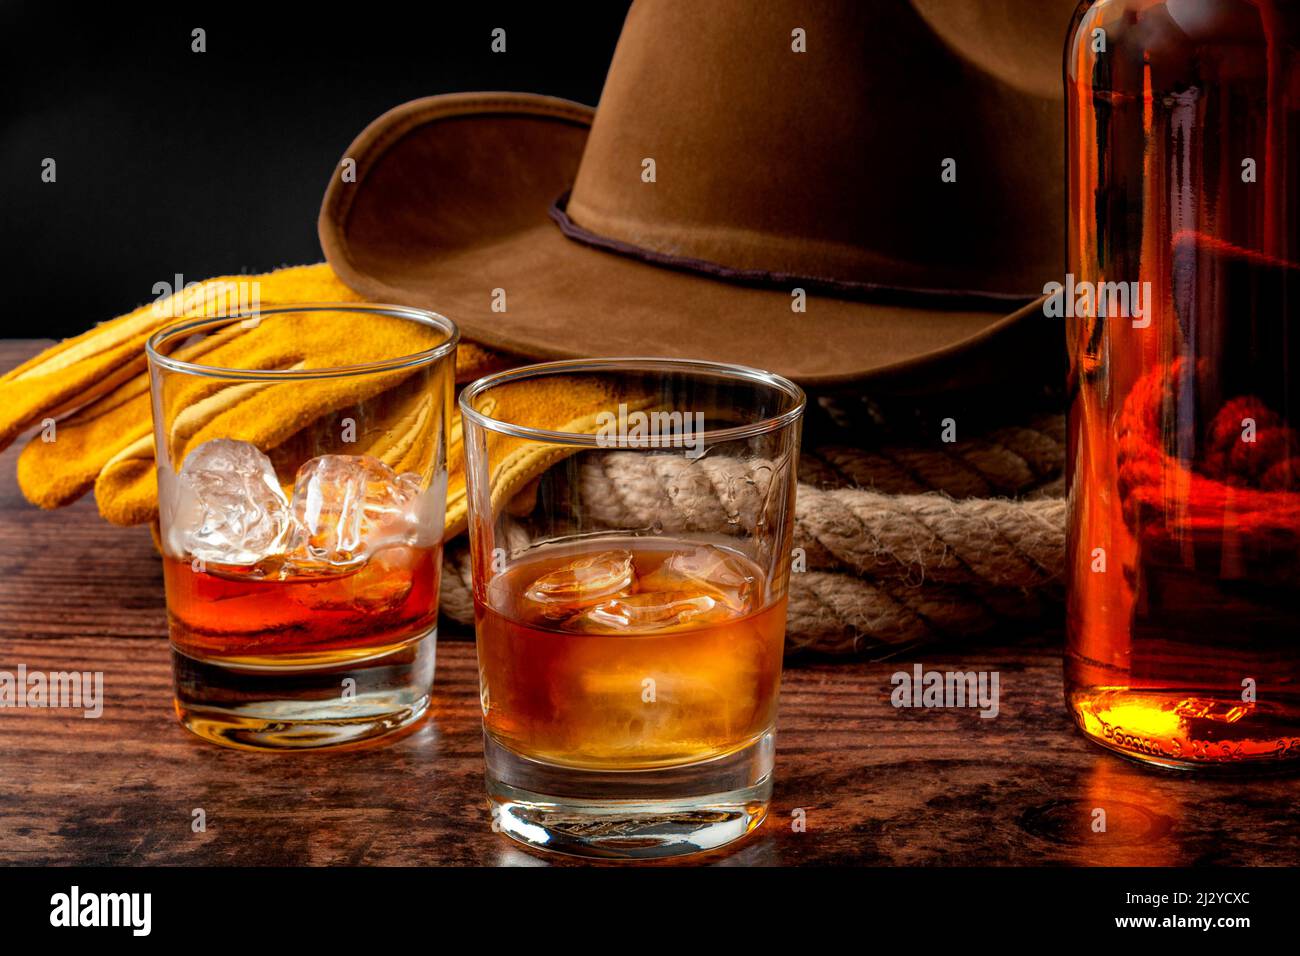 Le thème du concept de l'Ouest sauvage avec chapeau de cowboy, corde lasso, gants en cuir, deux verres de whisky sur les rochers et bouteille de bourbon sur table en bois Banque D'Images